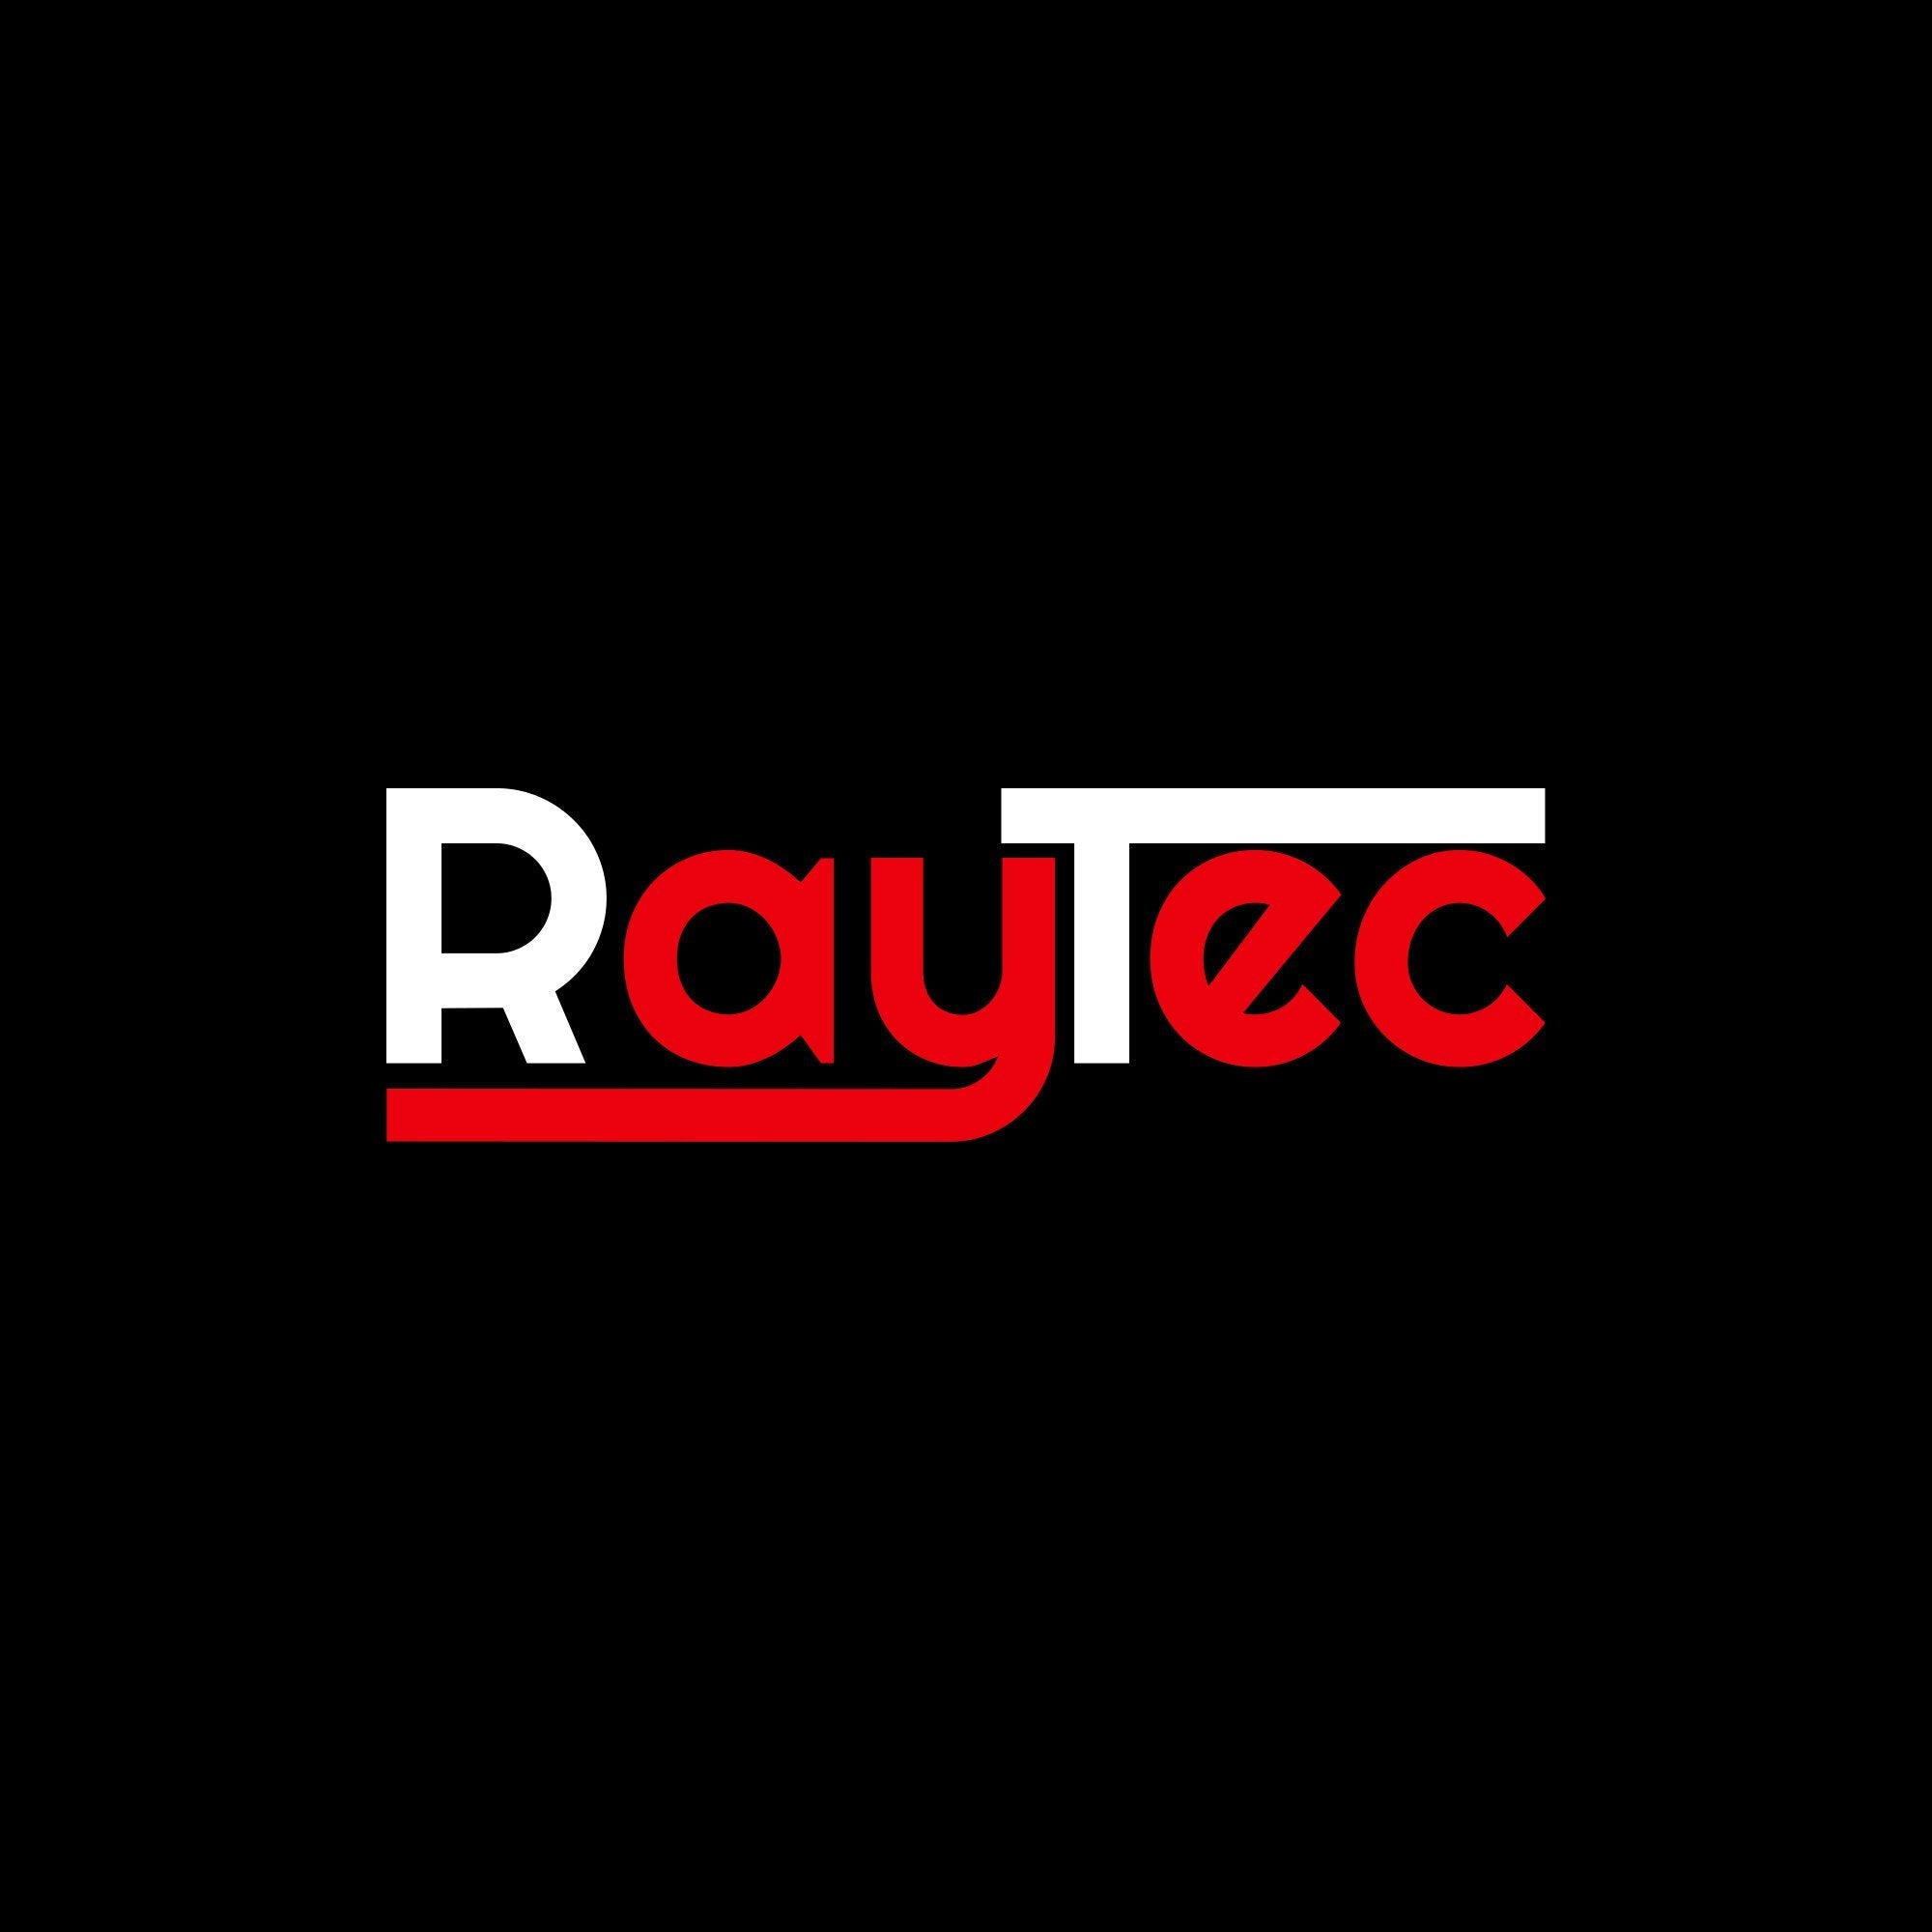 To RayTec Audio